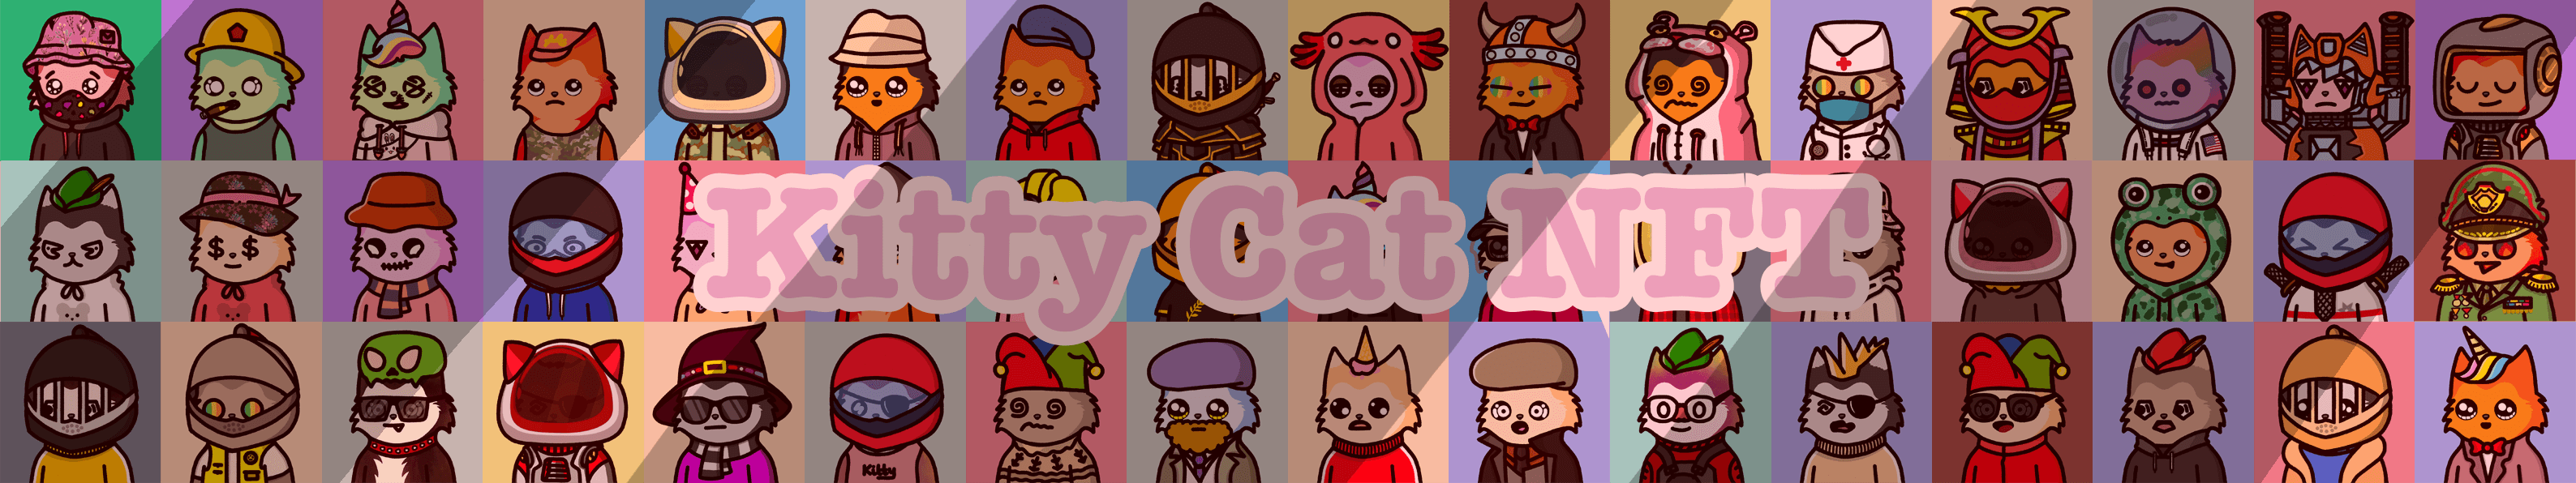 kittycatnft banner